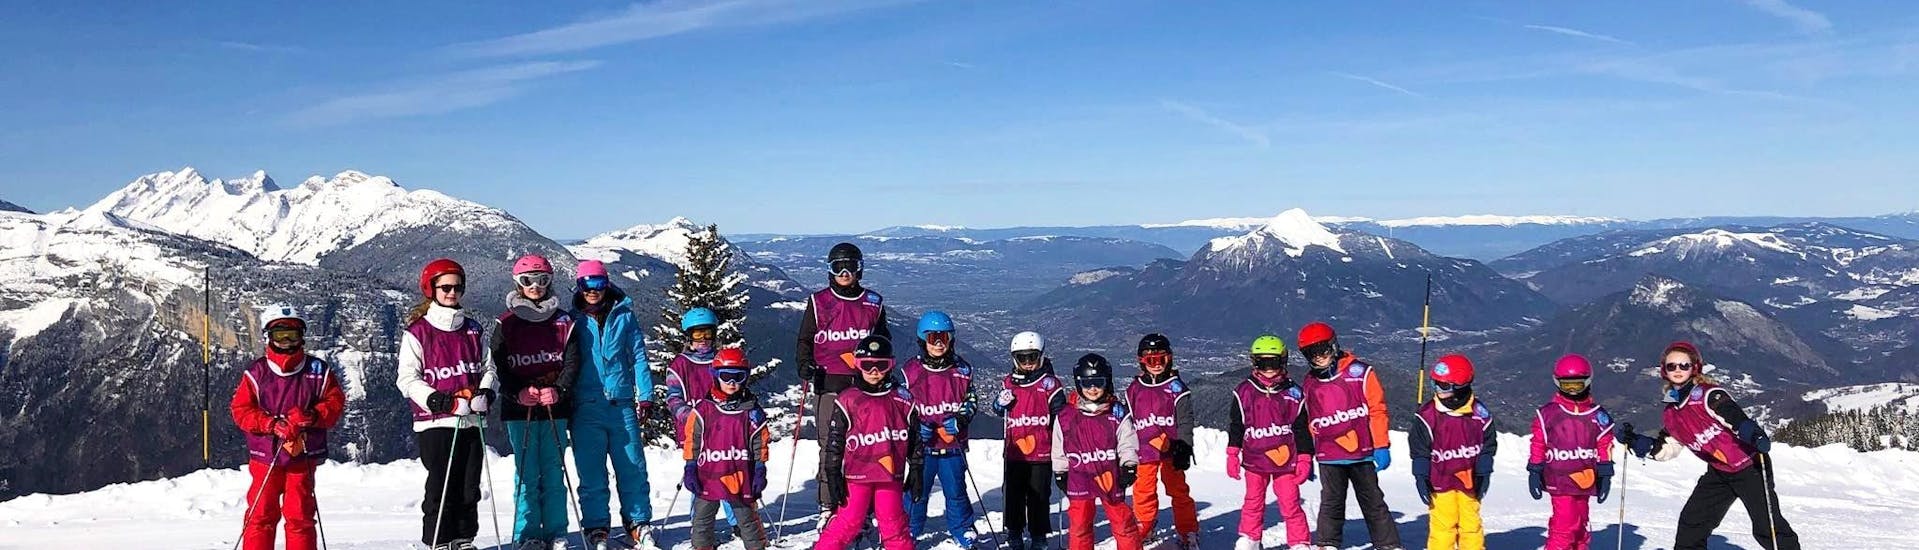 Lezioni di sci per bambini a partire da 5 anni per tutti i livelli.